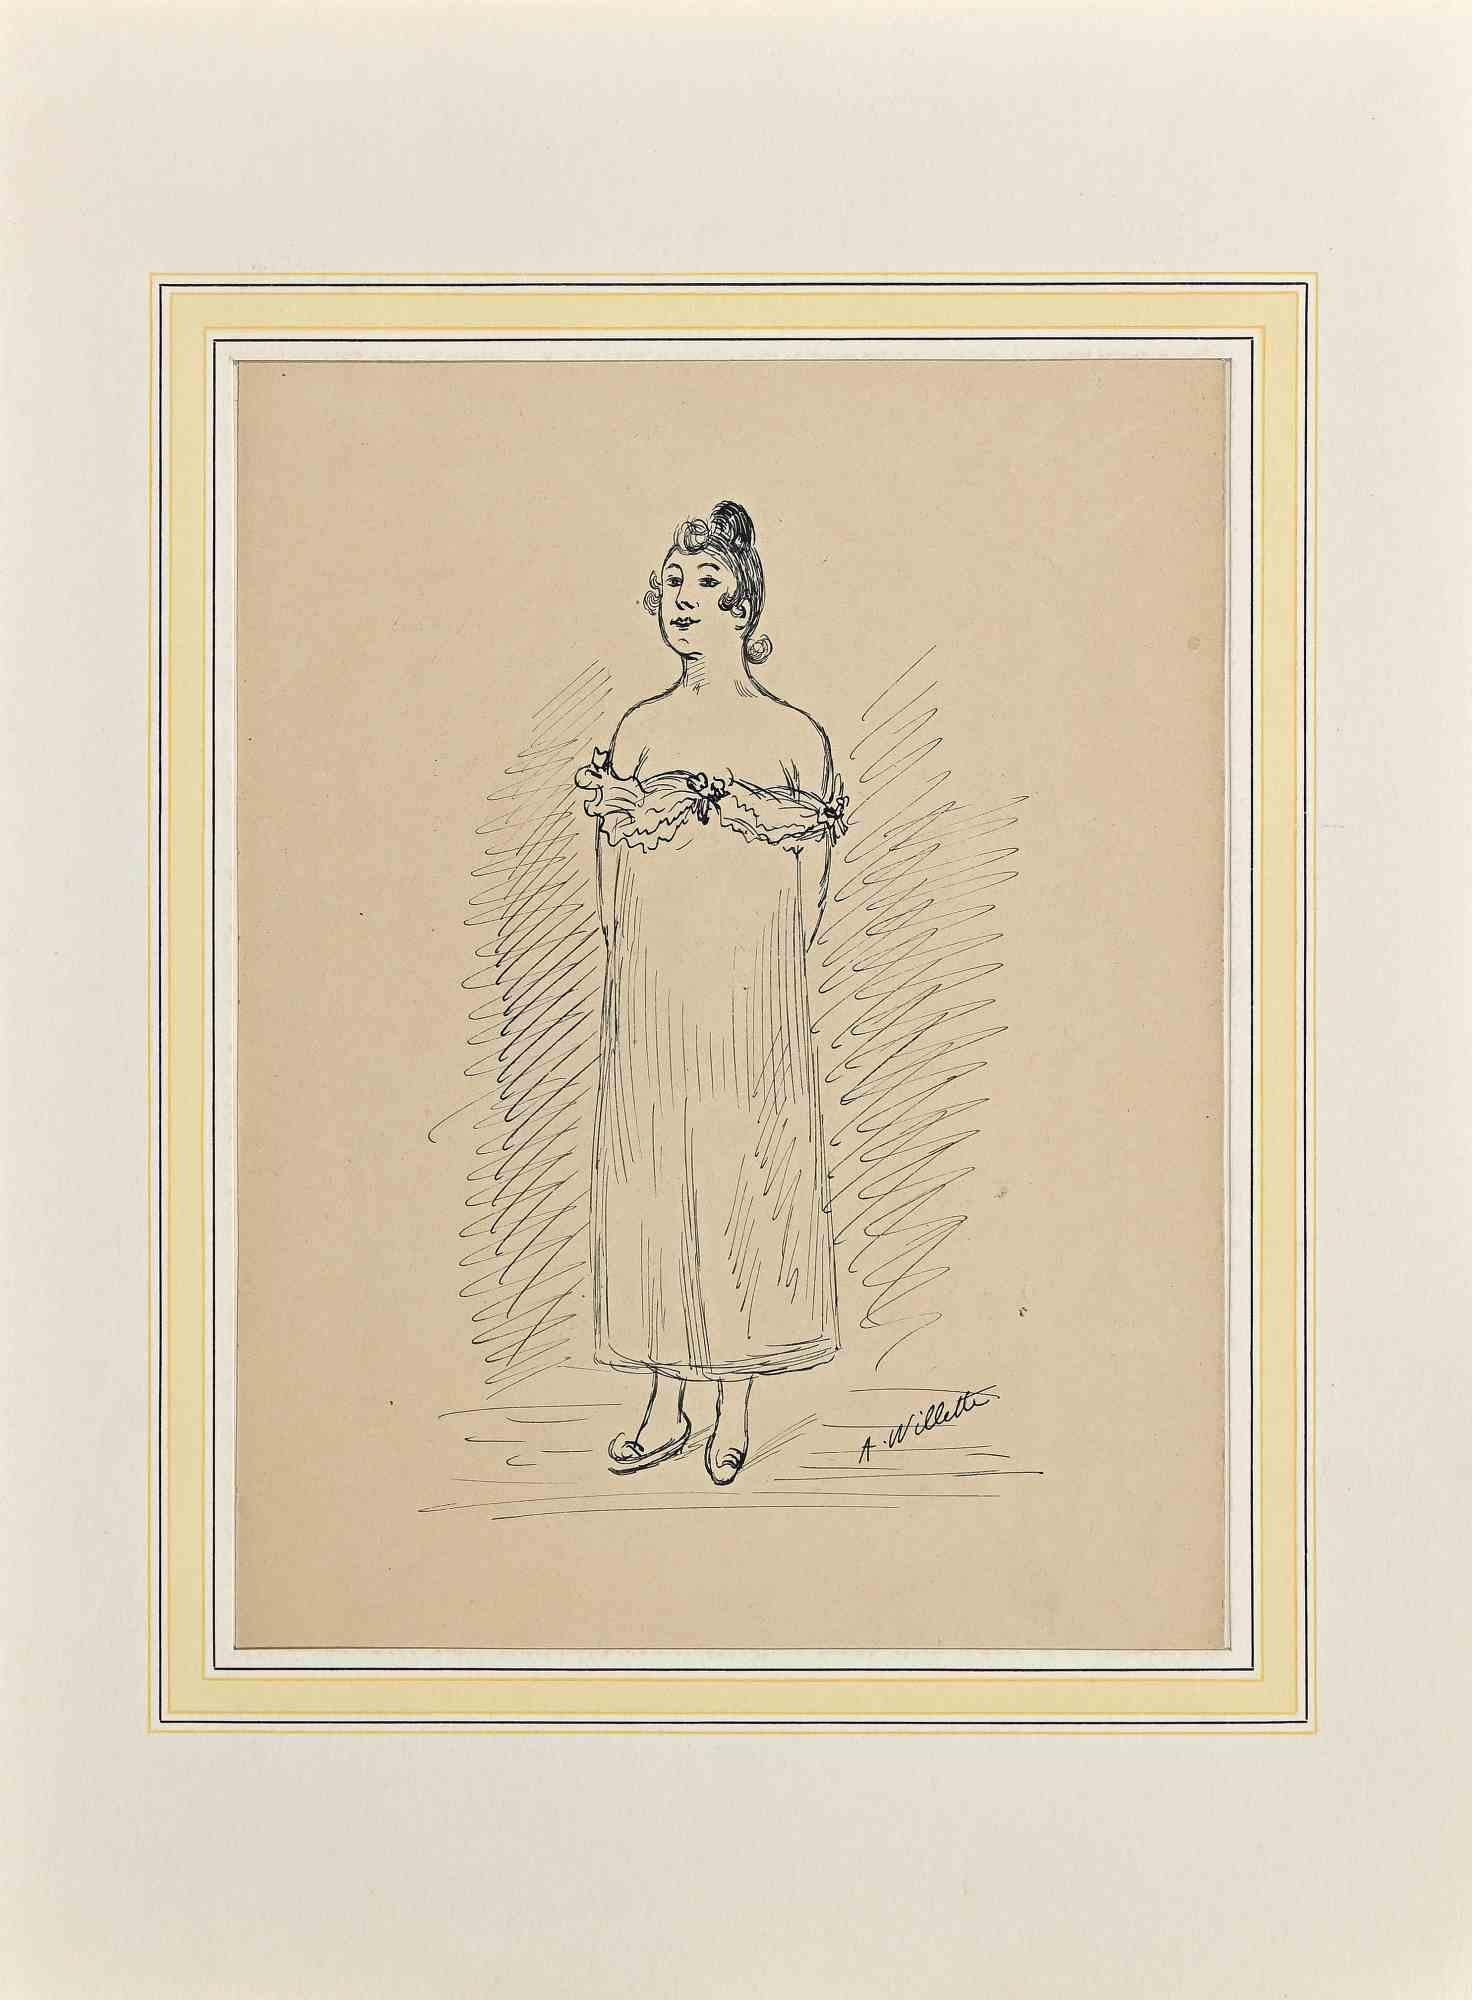 Die Dame ist eine Zeichnung des Künstlers Willette (Adolphe Léon).

Guter Zustand, einschließlich eines Passpartouts aus weißem Karton 34,5x26 cm.

Signatur am unteren rechten Rand.

Adolphe Léon Willette (30. Juli 1857, Châlons-sur-Marne - 4.